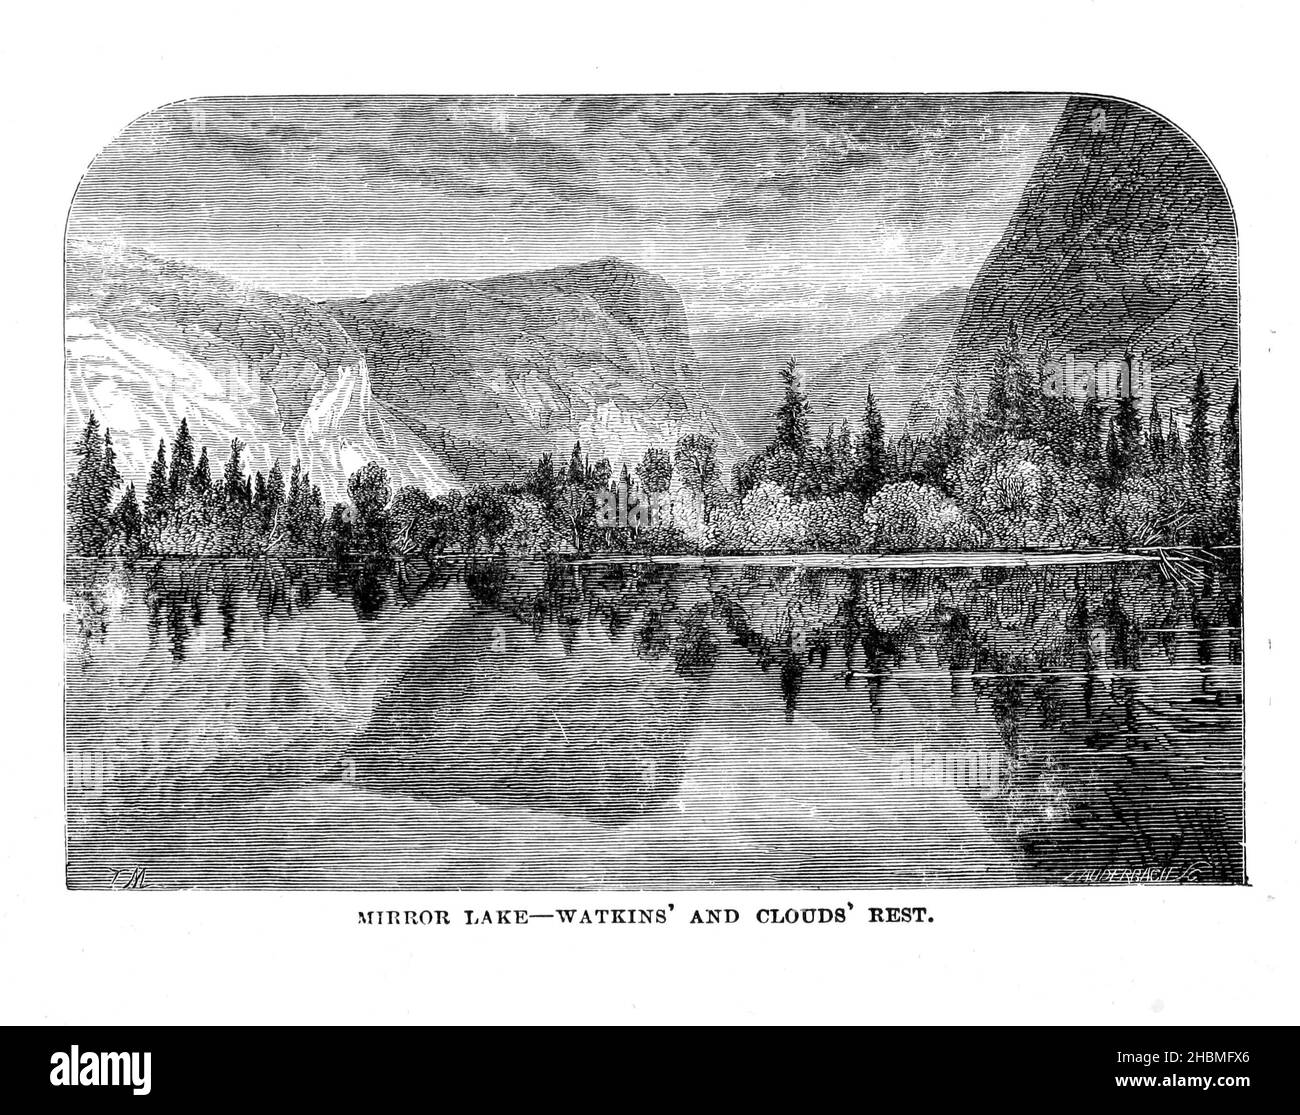 Mirror Lake - Watkins and Clouds Rest 1880 aus dem Buch "Entdeckung des Yosemite, und der indische Krieg von 1851, die zu diesem Ereignis führte" von Lafayette Houghton Bunnell, 1824-1903 Veröffentlicht New York, Chicago, F.H. Revell Company 1892. Lafayette Houghton Bunnell (1824-1903) war Mitglied des Mariposa Bataillons, das 1851 zu den weißen Entdeckern des Yosemite Valley wurde, als sie auf der Suche nach indianischen Stammesführern, die an den jüngsten Razzien auf amerikanische Siedlungen beteiligt waren, ausritten. Dr. Bunnell diente später als Chirurg im Bürgerkrieg. Entdeckung des Yosemite und des Indianenkrieges von 185 Stockfoto